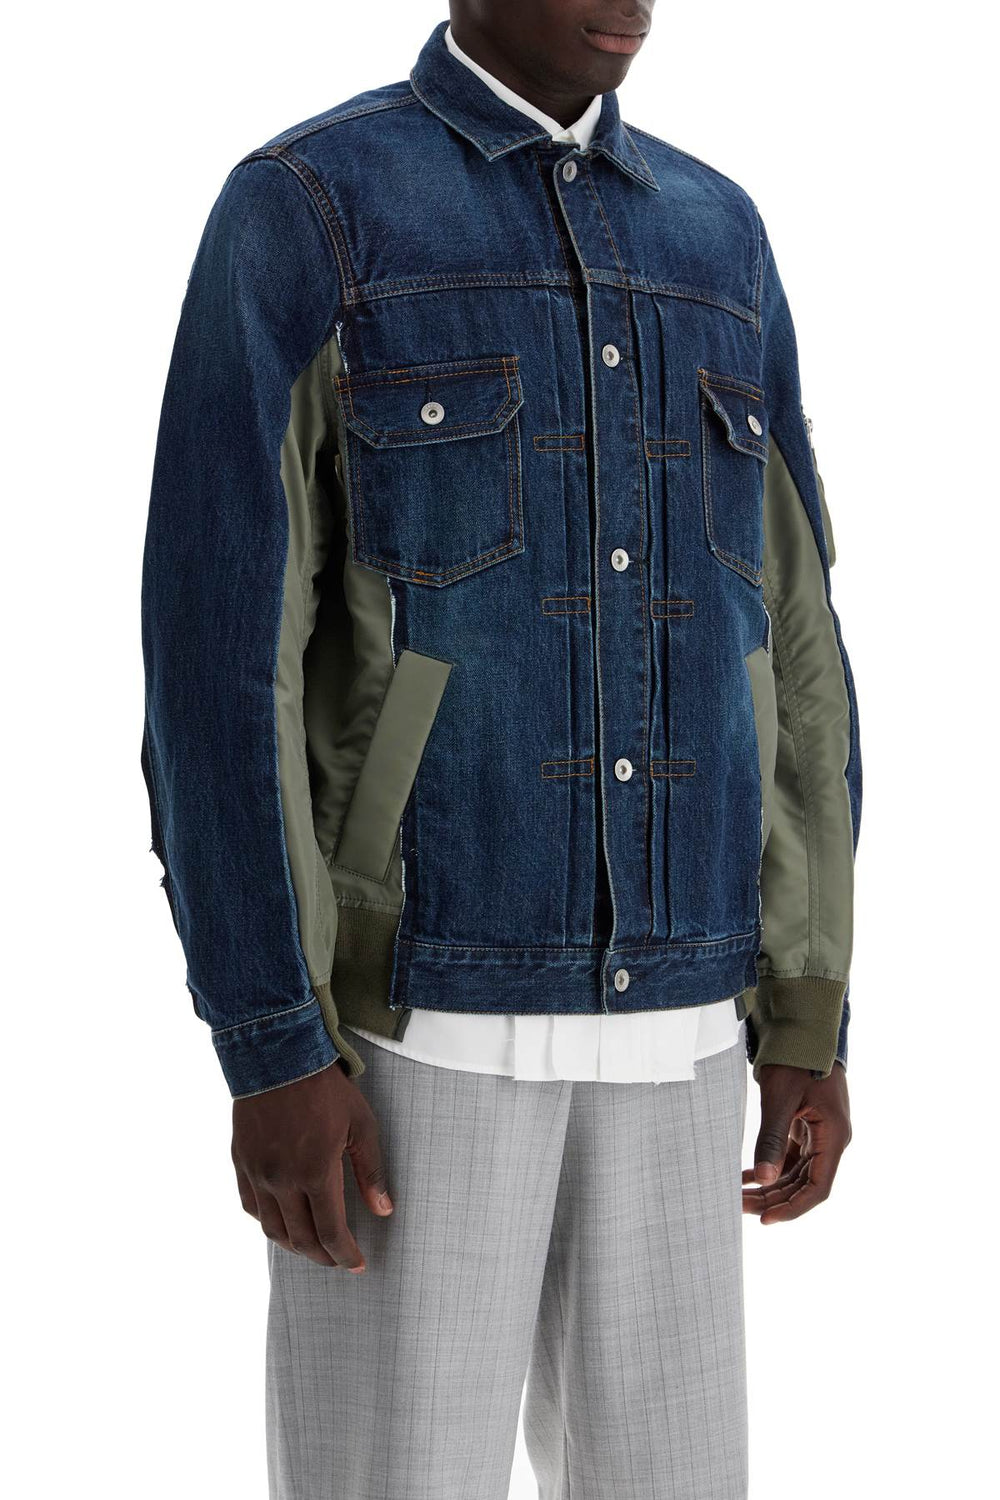 denim and nylon jacket for men-1